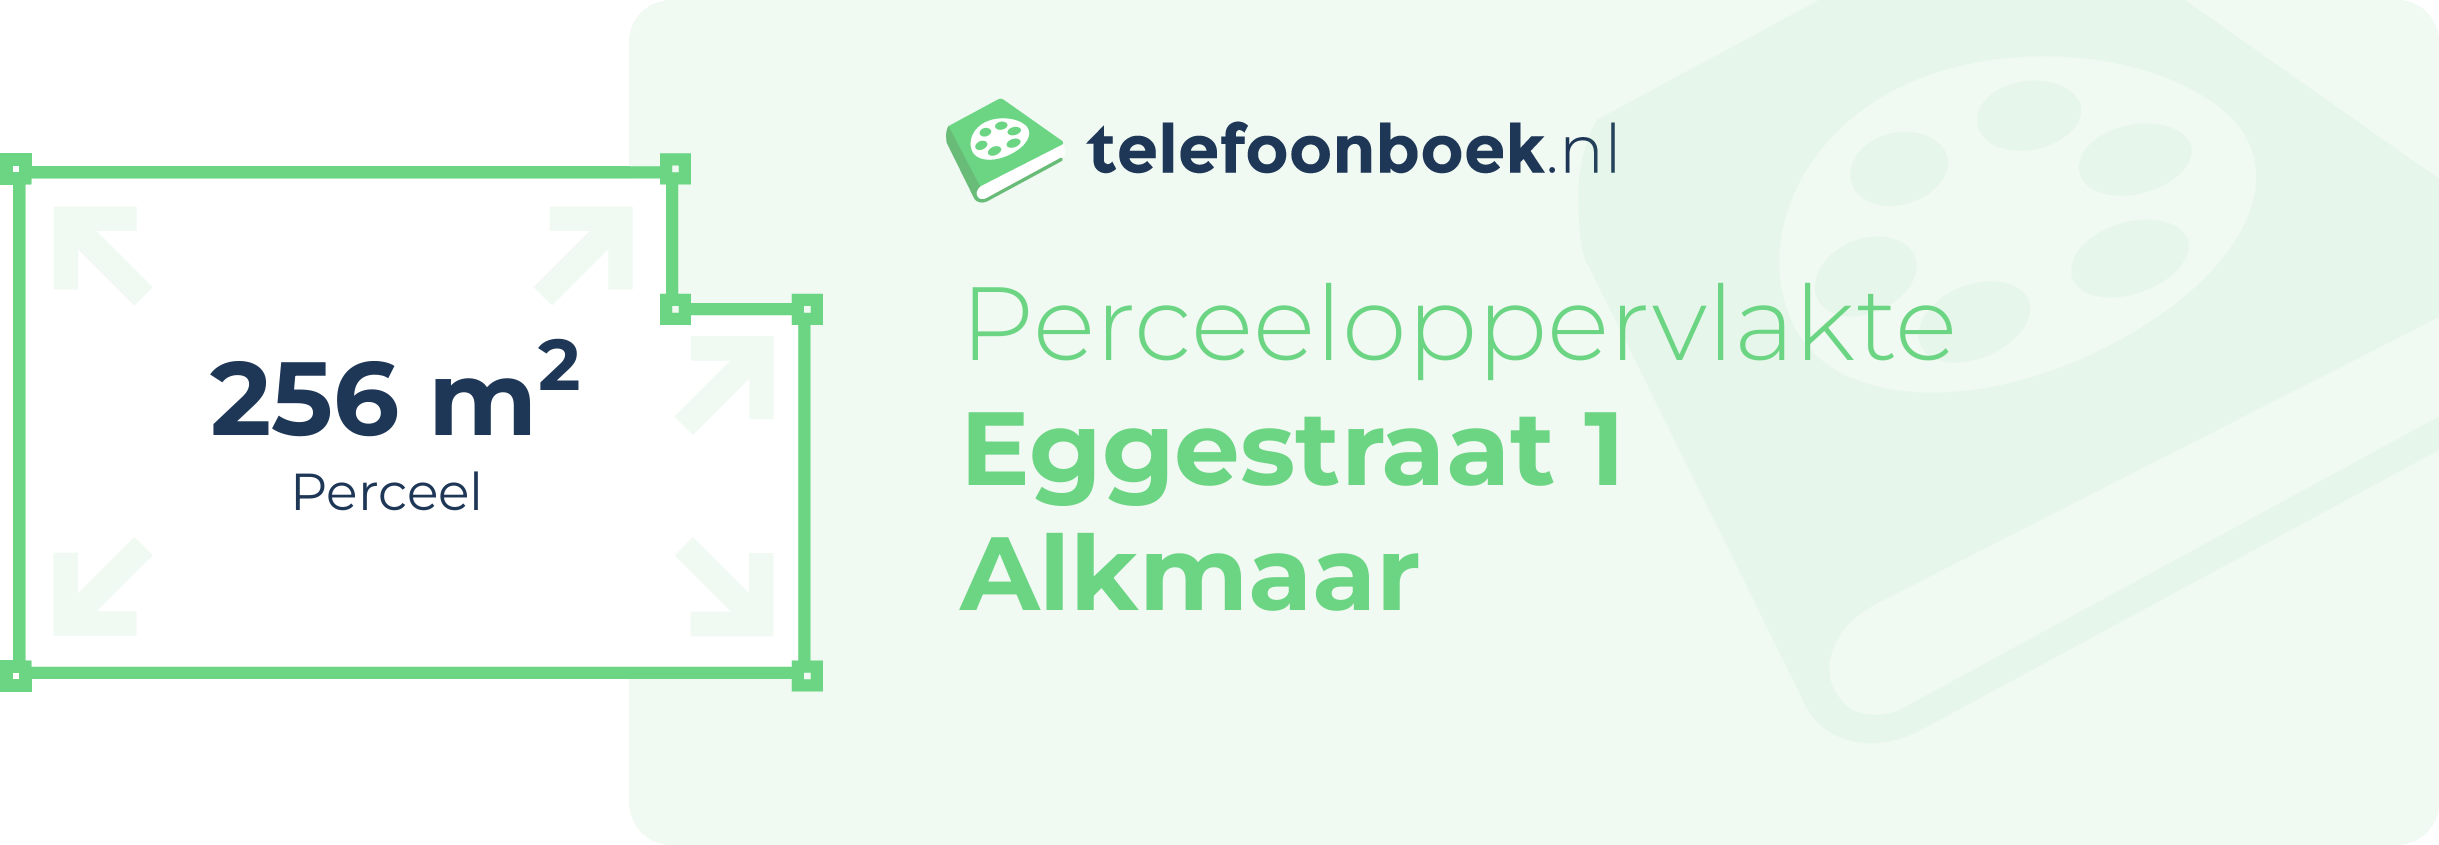 Perceeloppervlakte Eggestraat 1 Alkmaar